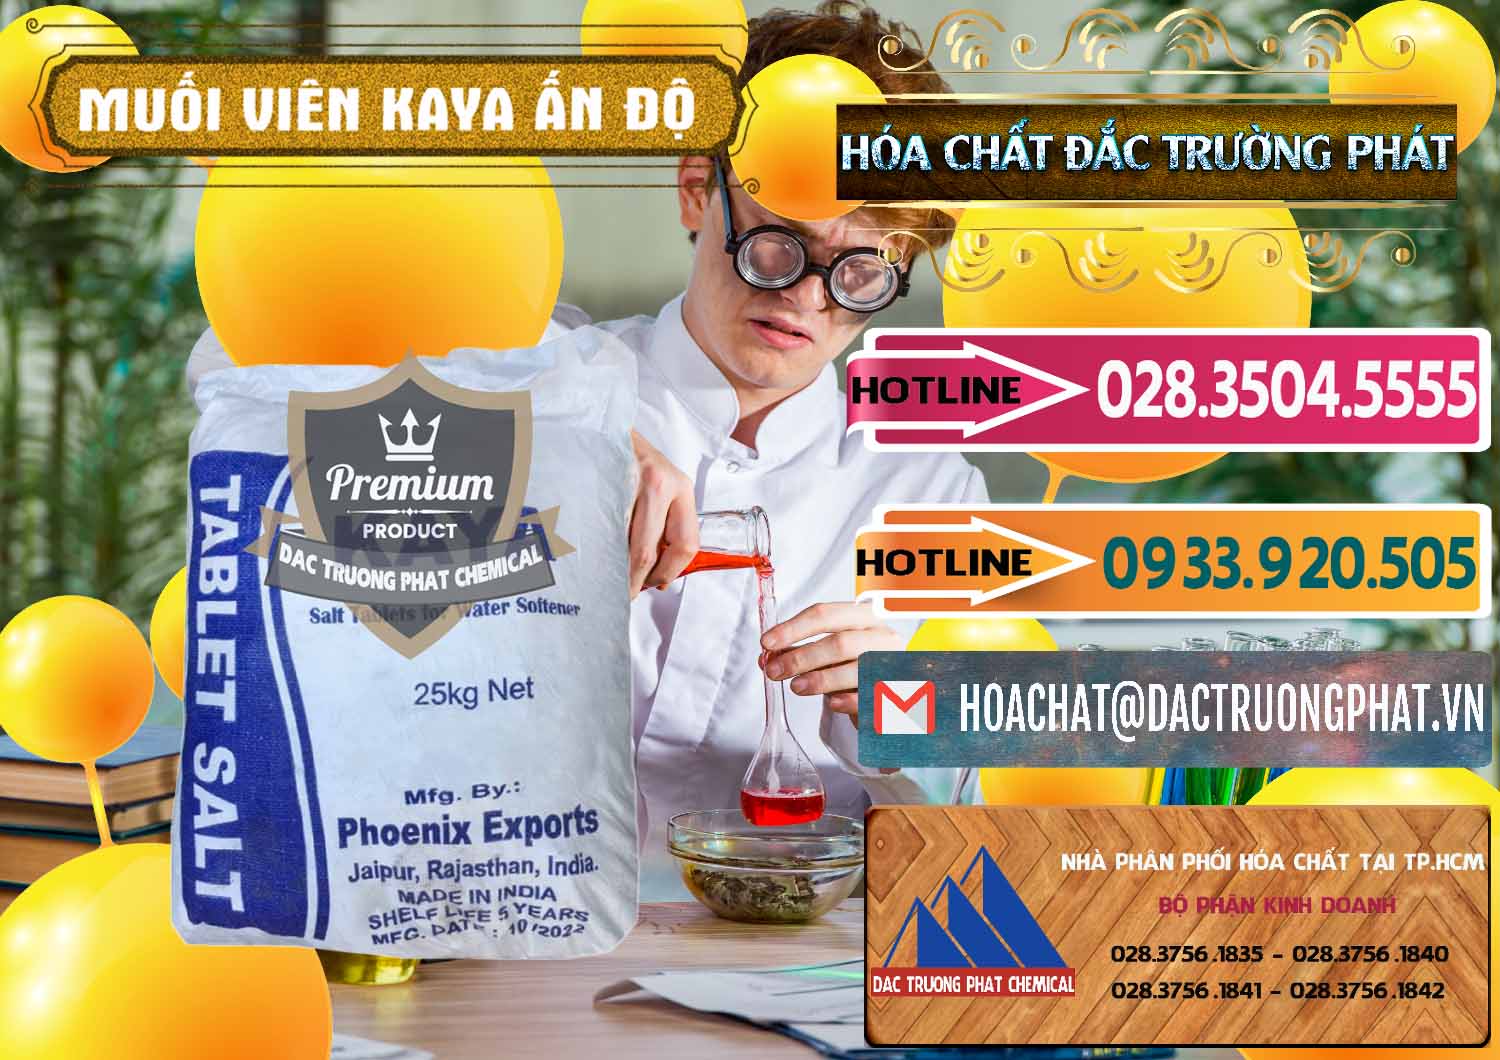 Cty kinh doanh và bán Muối NaCL – Sodium Chloride Dạng Viên Tablets Kaya Ấn Độ India - 0368 - Công ty phân phối _ cung cấp hóa chất tại TP.HCM - dactruongphat.vn